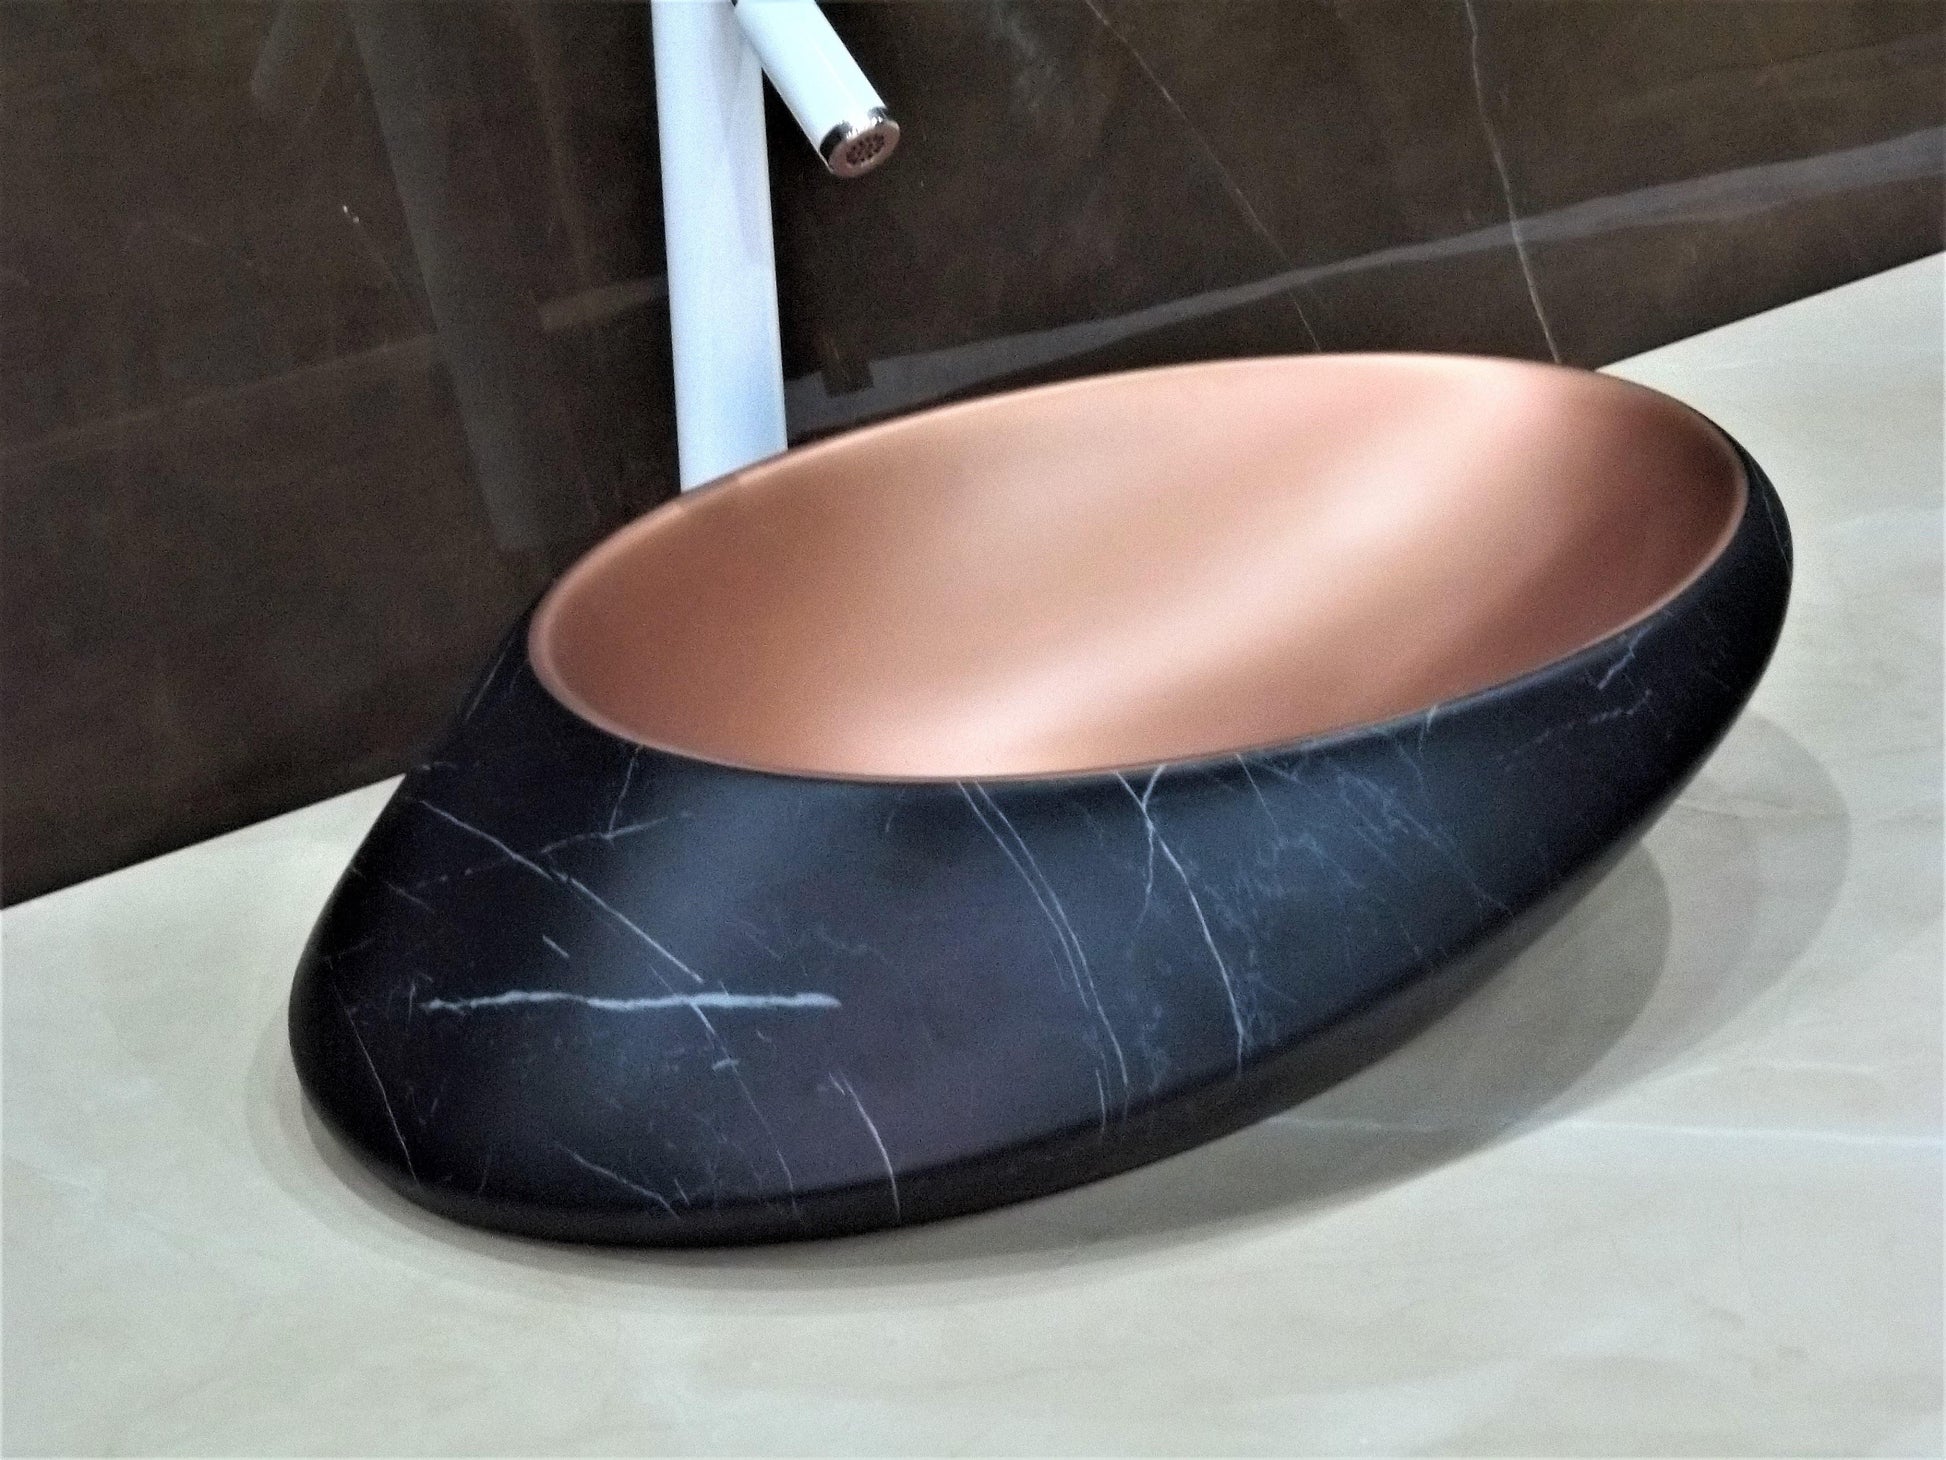 Table Top Premium Designer Ceramic Wash Basin/Vessel Oval Black Marble Finish Satin Designer for Bathroom 20 x 15 x 6 Inch (Black Color) - Bath Outlet